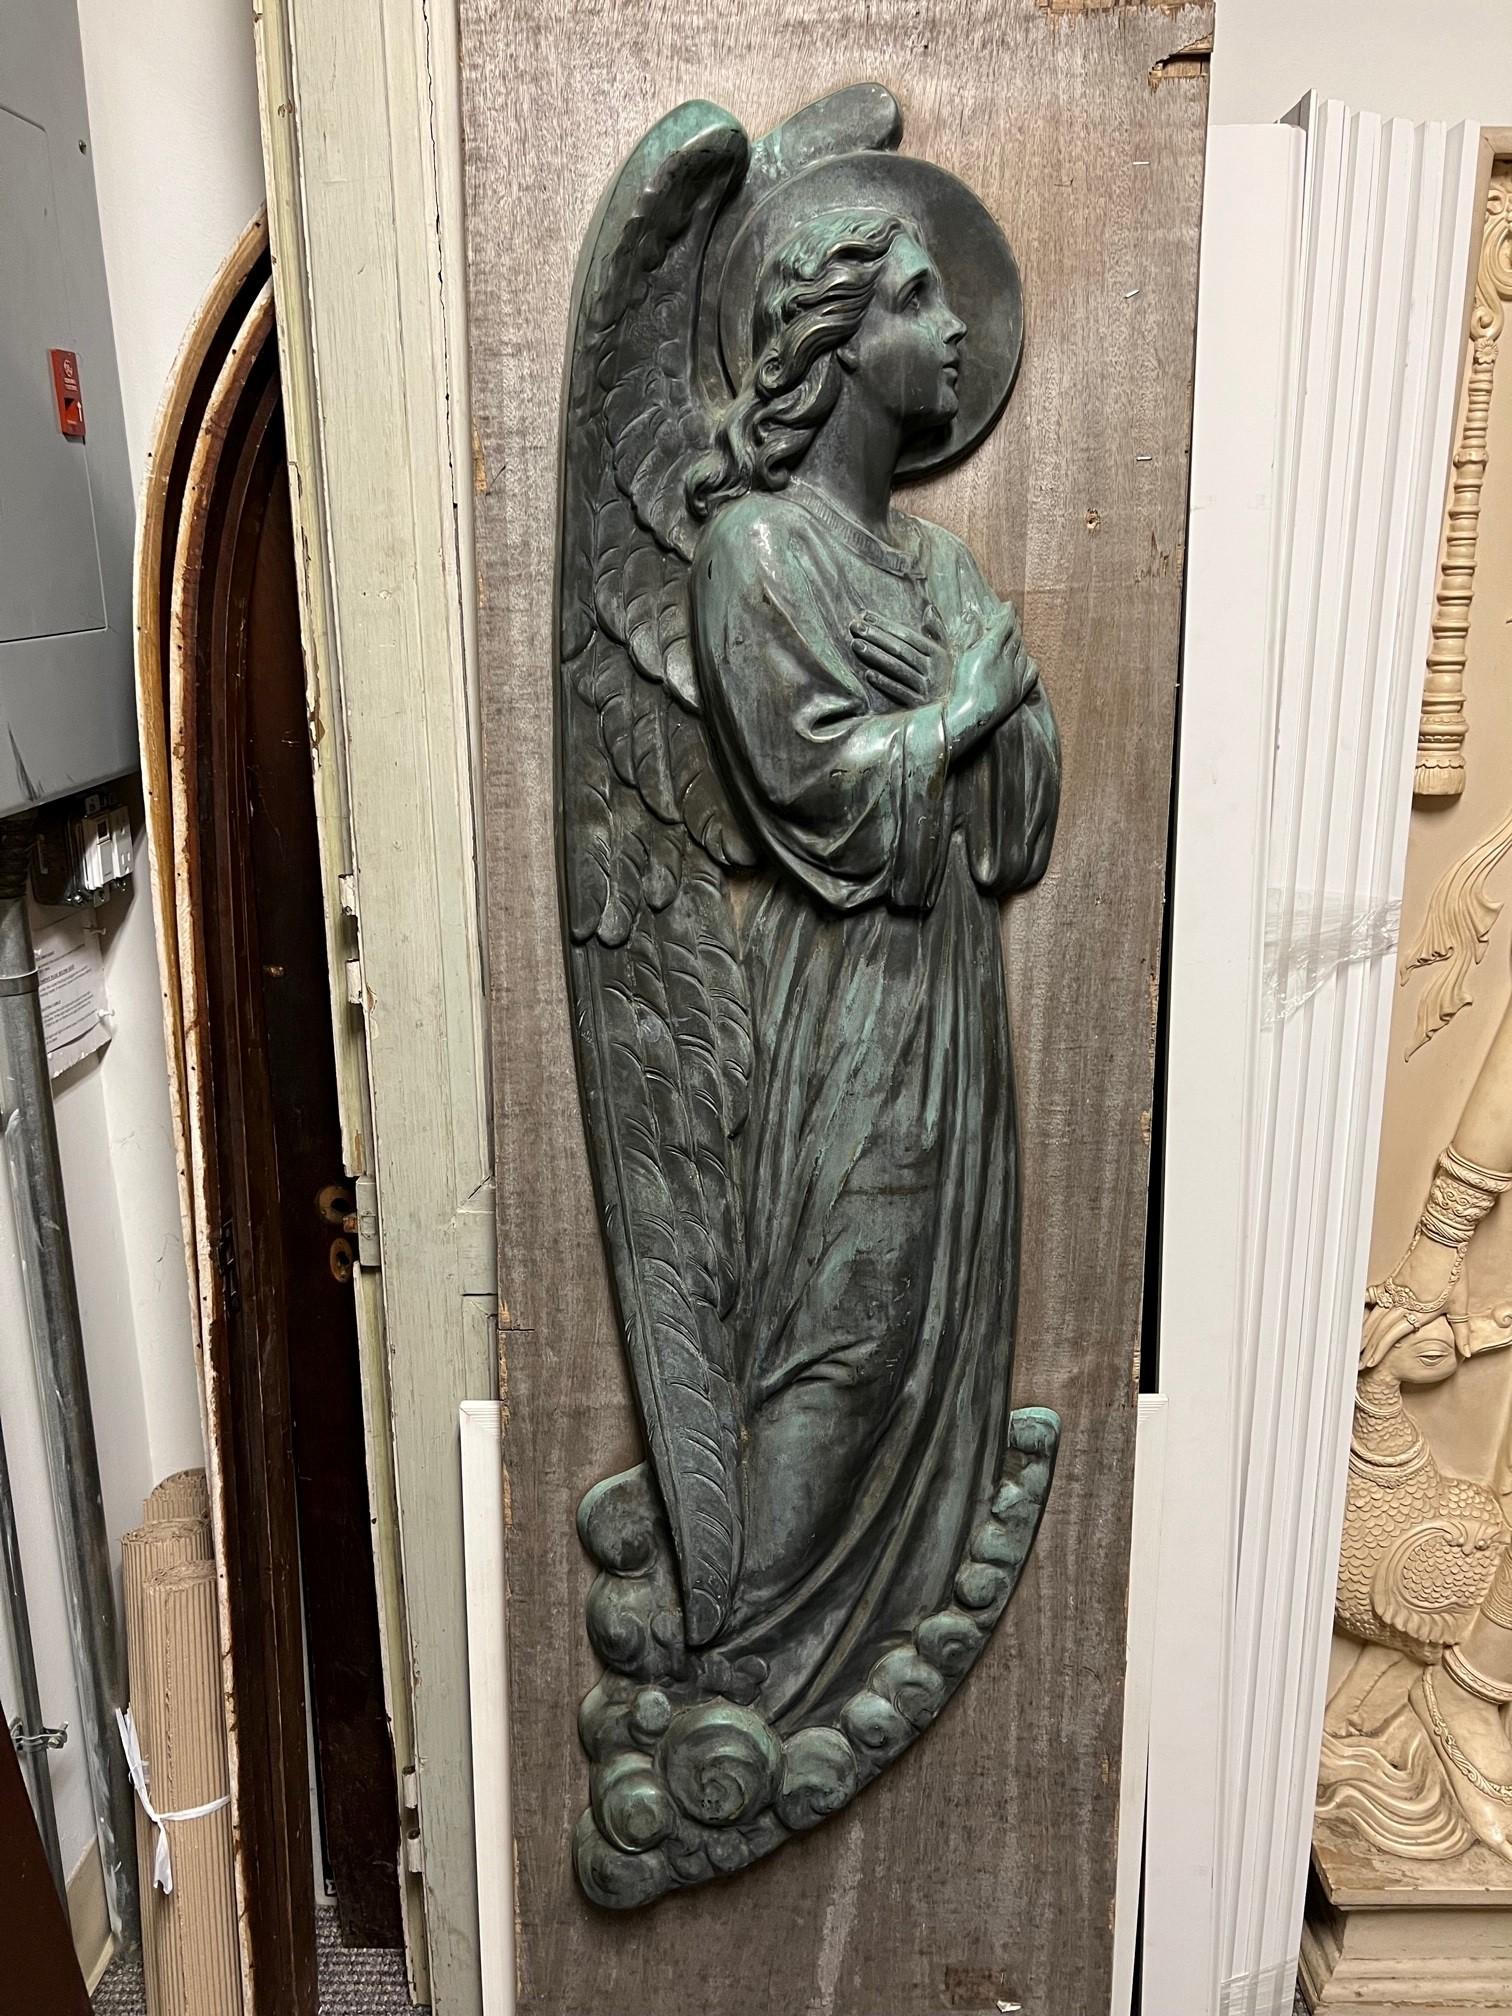 Antique ange priant en bronze du 19e siècle, aux bras croisés et aux détails très fins. Les bras croisés sur une statue d'ange représentent la révérence. Il s'agissait en fait d'une posture de révérence bien avant qu'elle ne devienne un langage